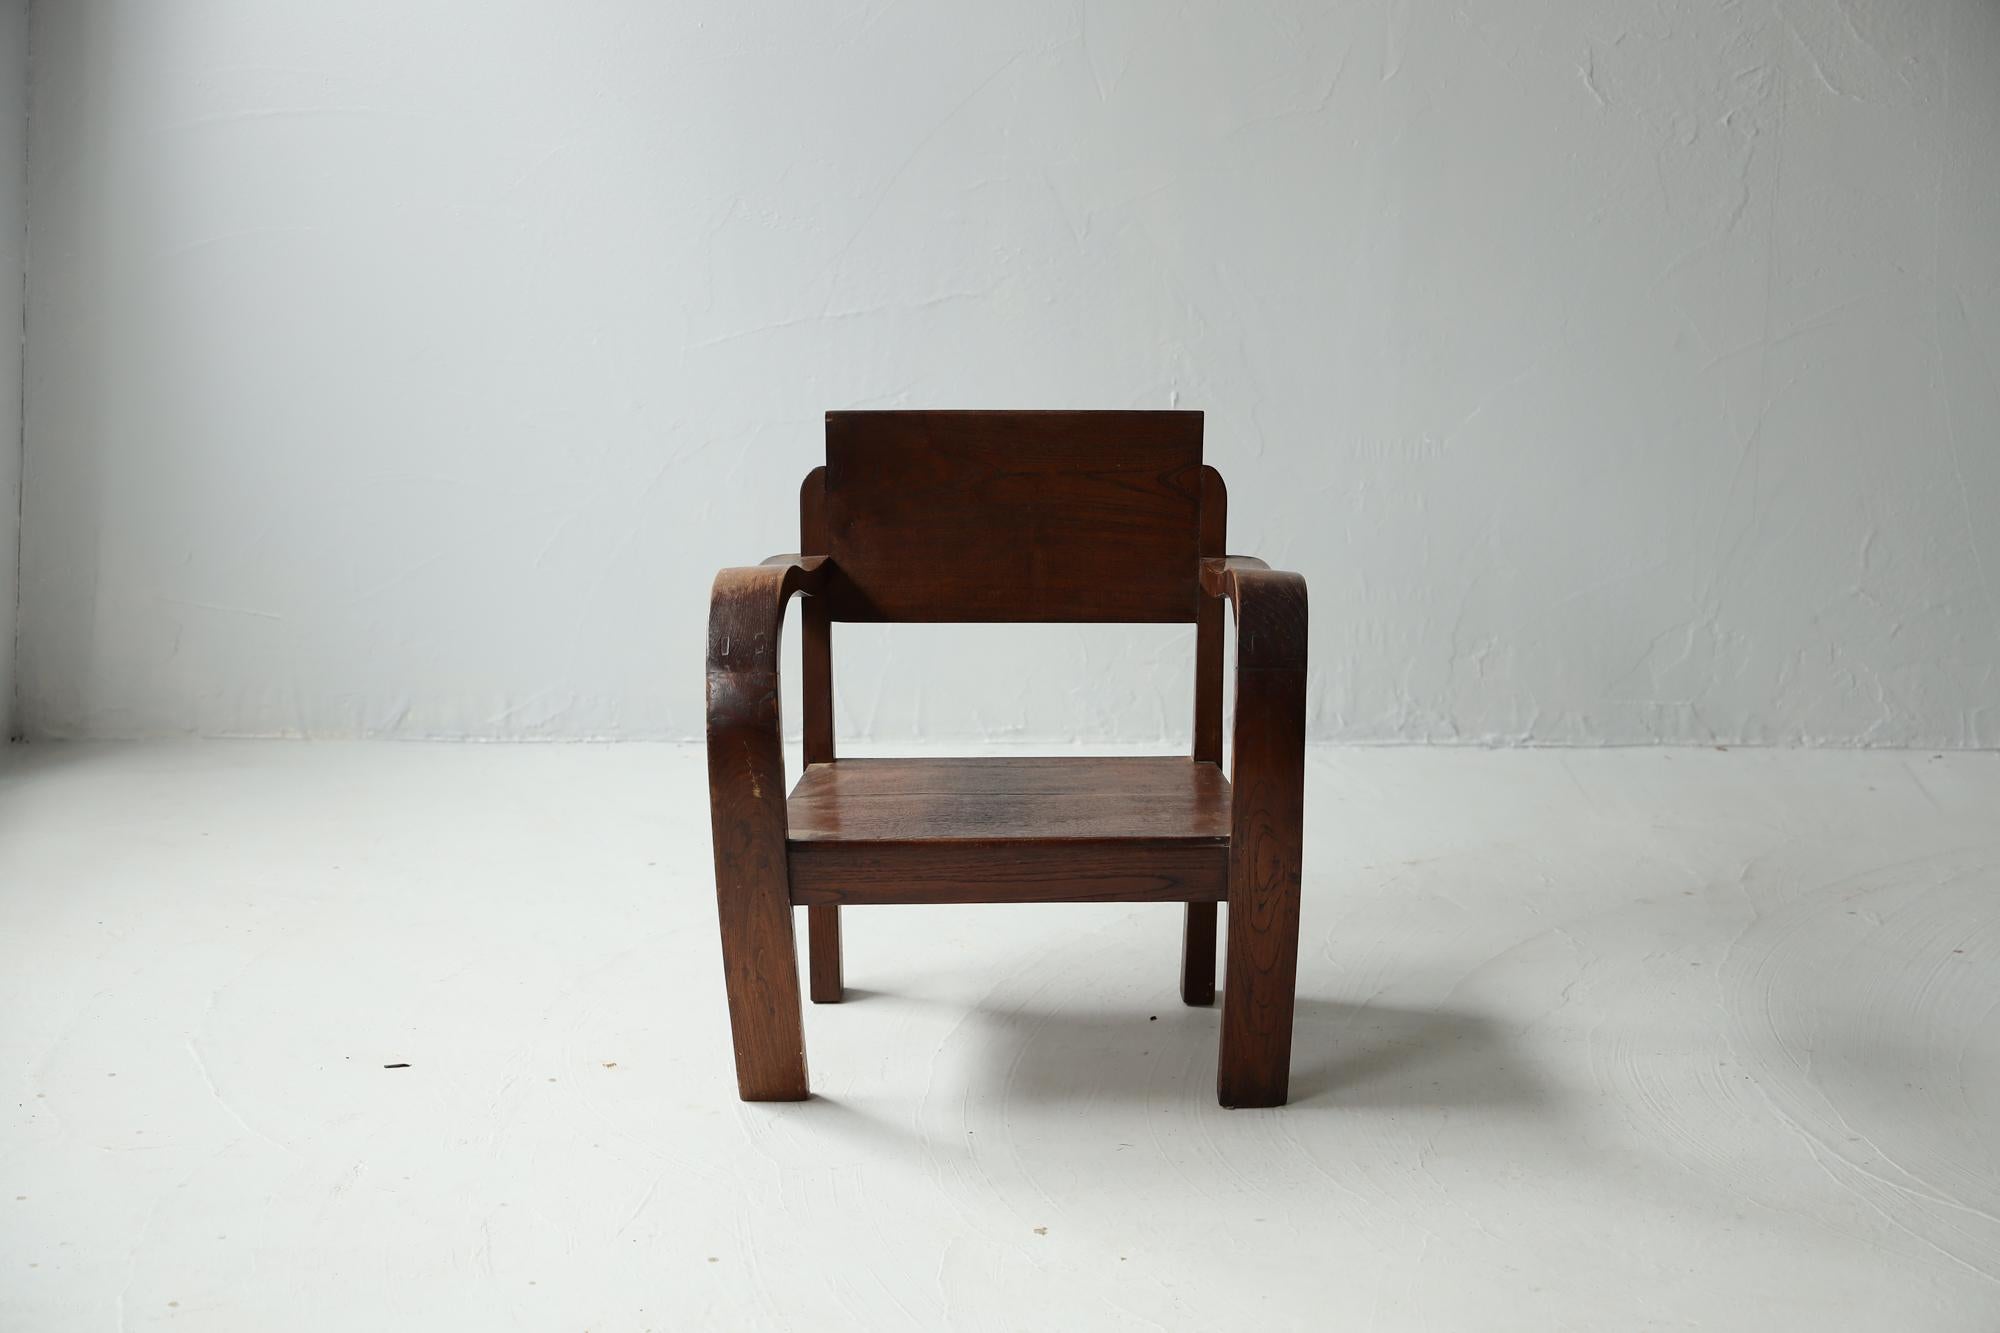 Il s'agit d'une chaise japonaise.
Il date de la période Taisho.
Le matériau utilisé est le bois de zelkova japonais.
Il est rustique et de bon goût, rappelant le monde de 